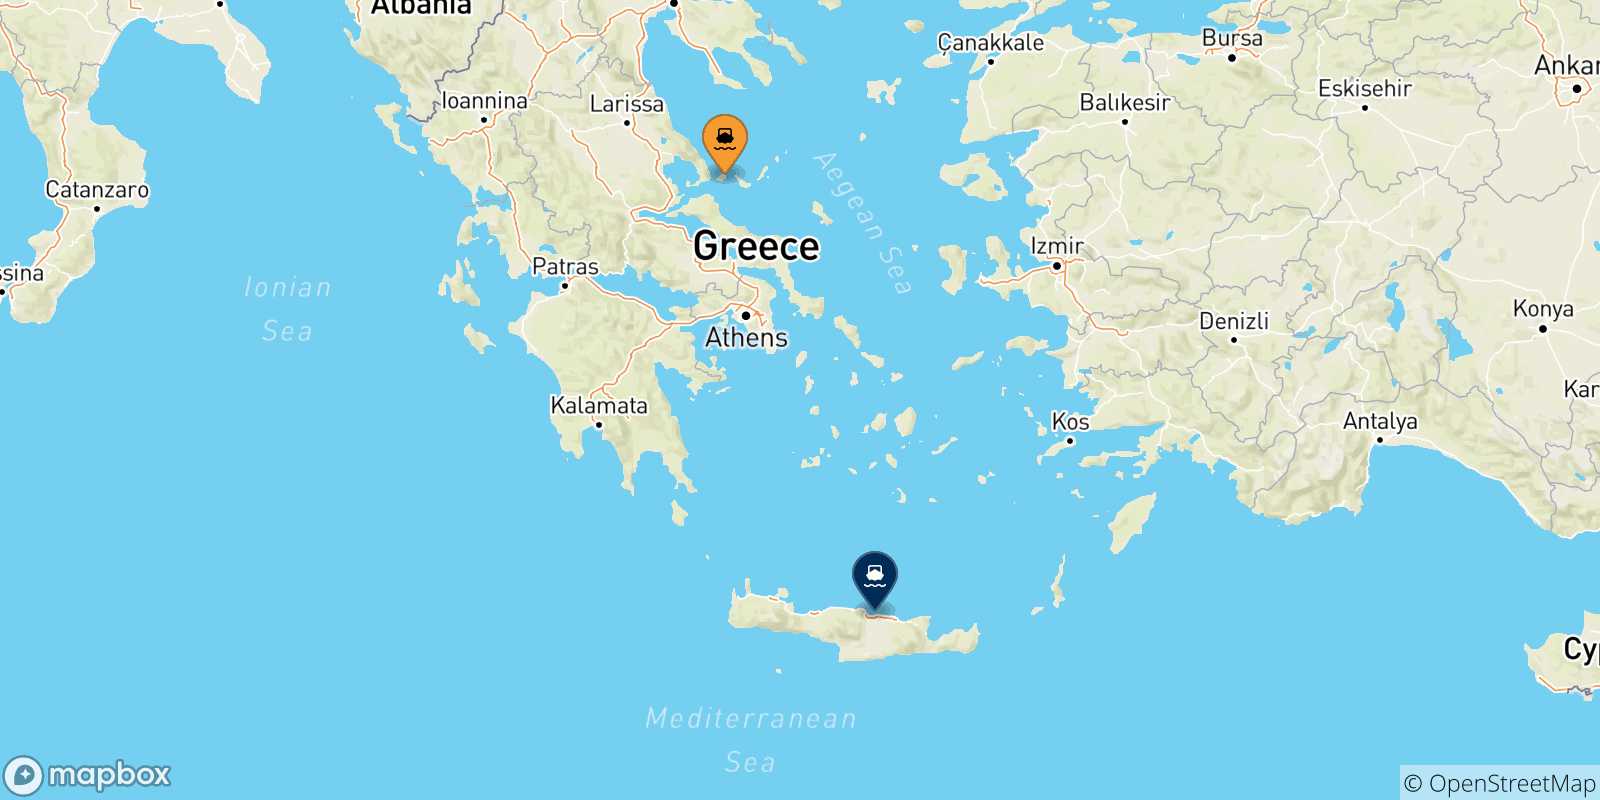 Mappa delle possibili rotte tra le Isole Sporadi e Creta